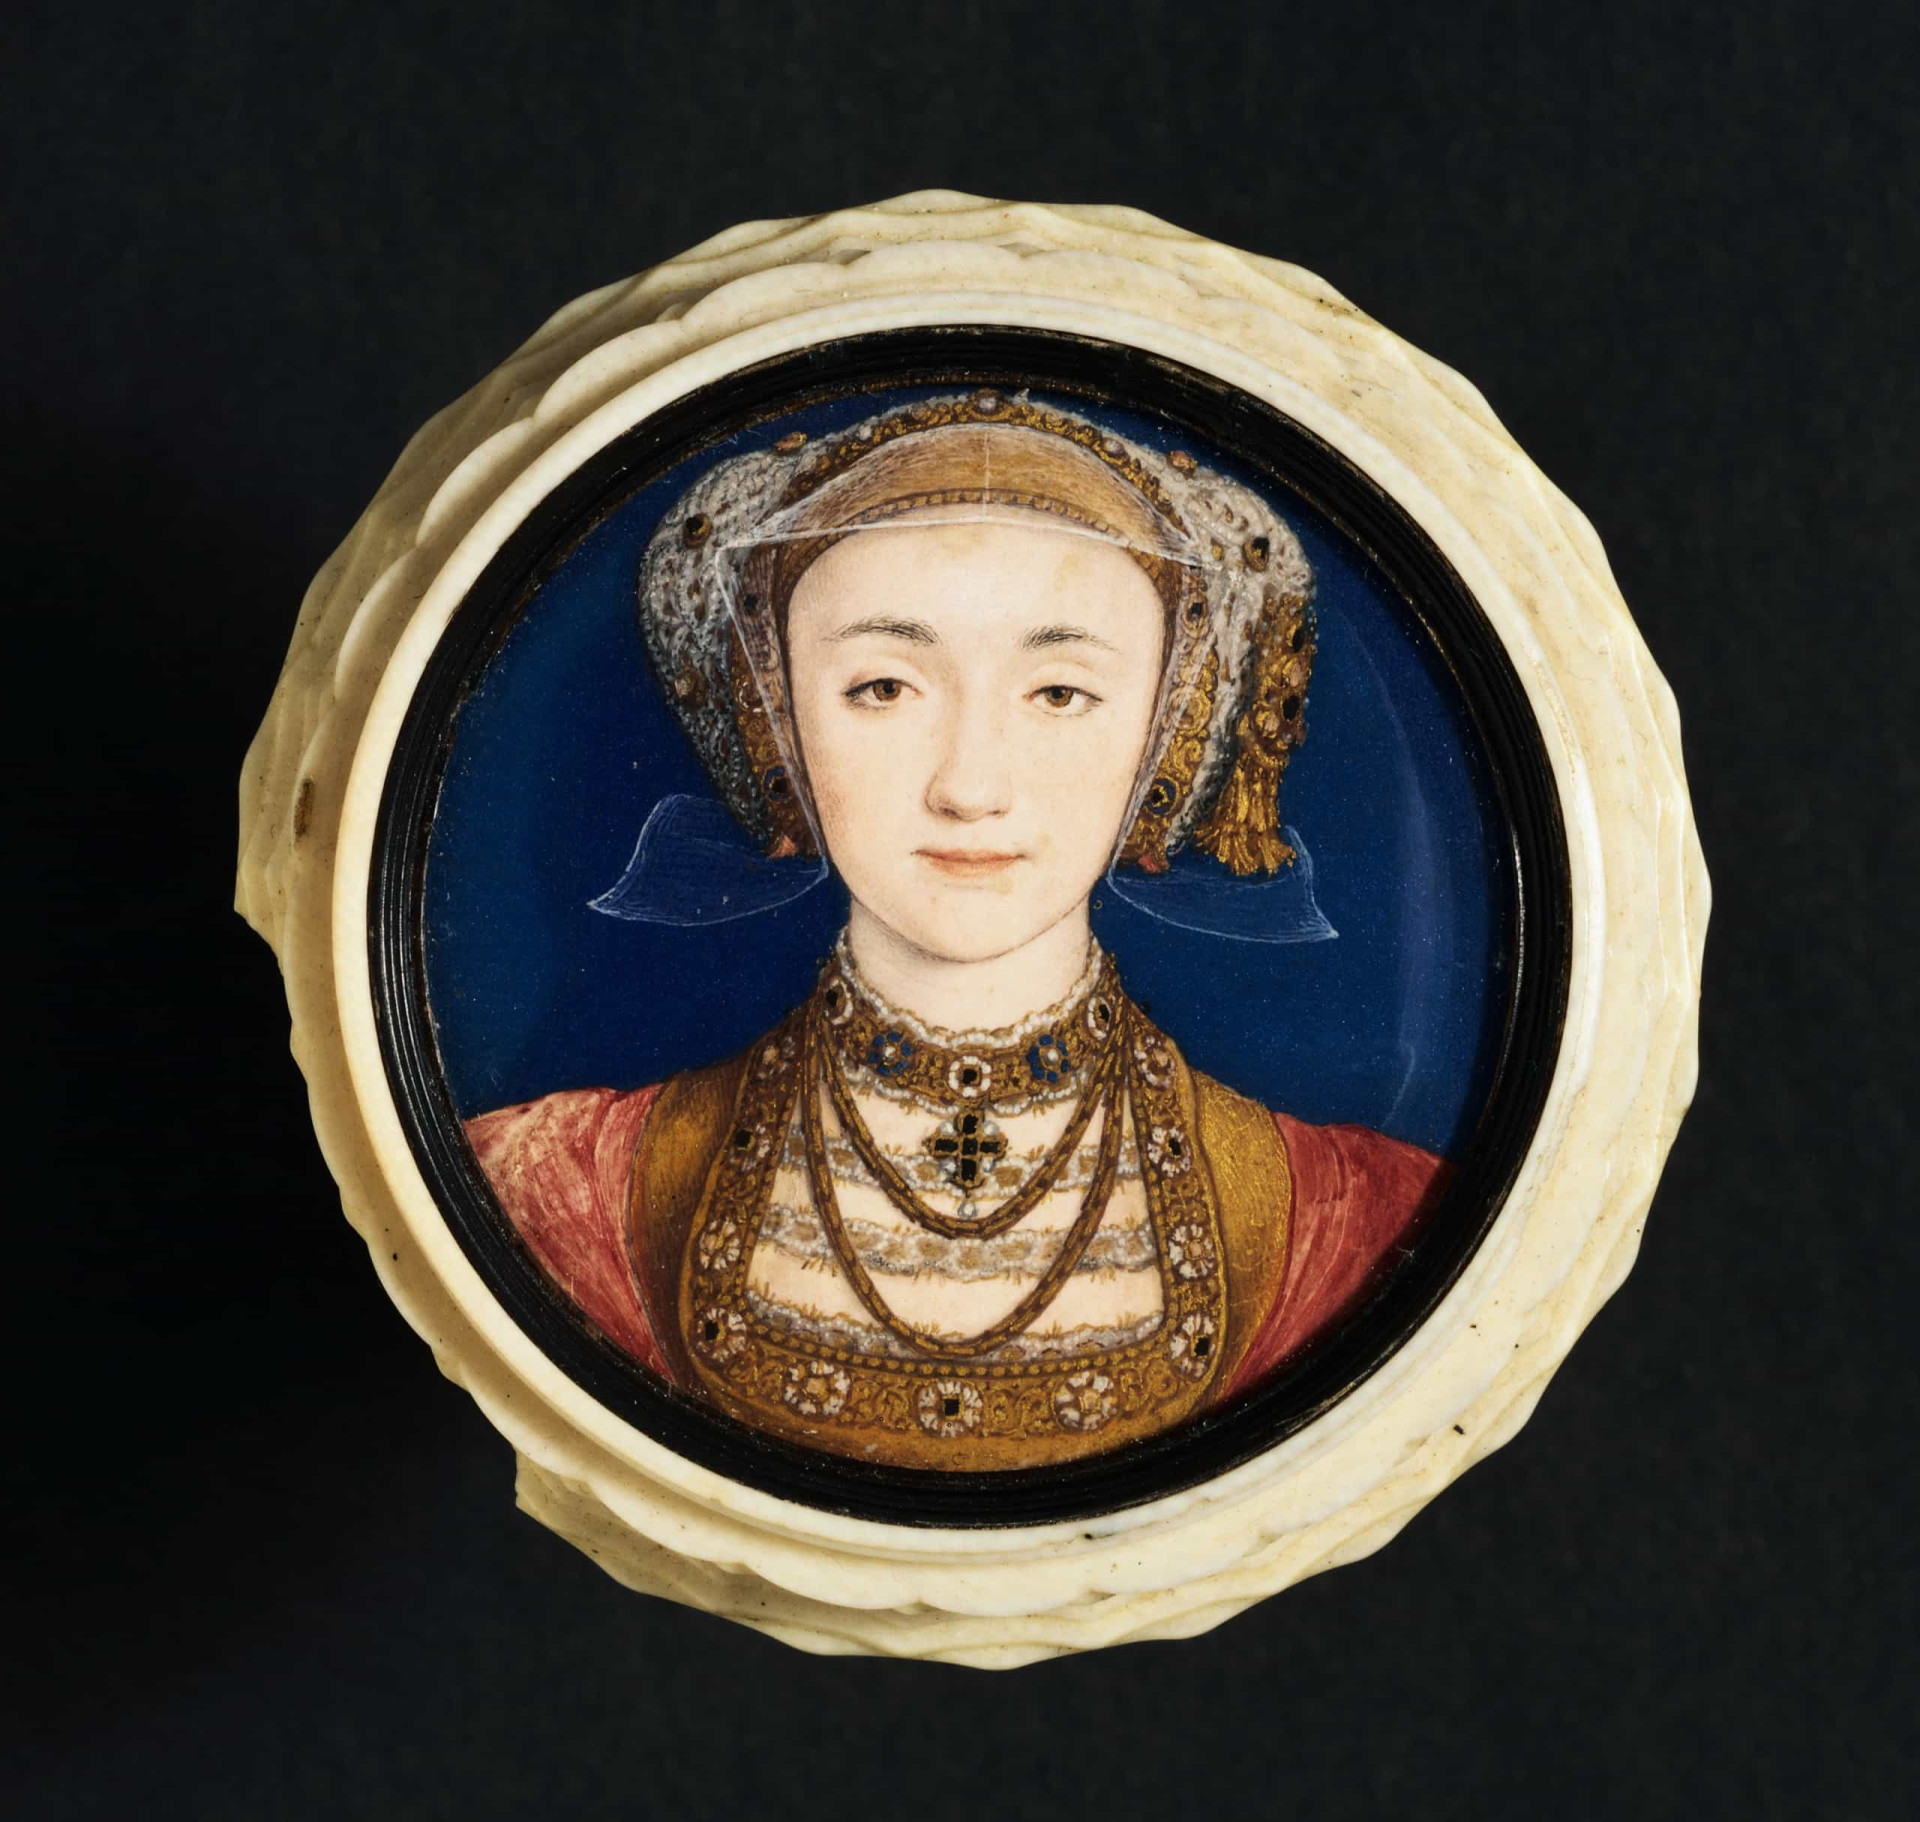 <p><span><span>Henrique VIII e Ana de Cleves se casaram em 6 de janeiro de 1540. O casamento nunca foi consumado, porém, e ela não foi coroada rainha consorte.</span></span> <span><span>Logo, o Rei tratou de procurar uma saída.</span></span> <span><span>A união foi finalmente dissolvida e ela recebeu propriedades como parte do acordo, que incluía o Castelo de Hever - a residência anterior de Ana Bolena.</span></span> <span><span>Ana de Cleves faleceu em 1557 e encontrou seu local de descanso final na Abadia de Westminster.</span></span></p><p>Veja também:<a href="https://br.starsinsider.com/n/445786?utm_source=msn.com&utm_medium=display&utm_campaign=referral_description&utm_content=586398v5"> Micro bolsa: tendência fabulosa ou inútil dos famosos?</a></p>